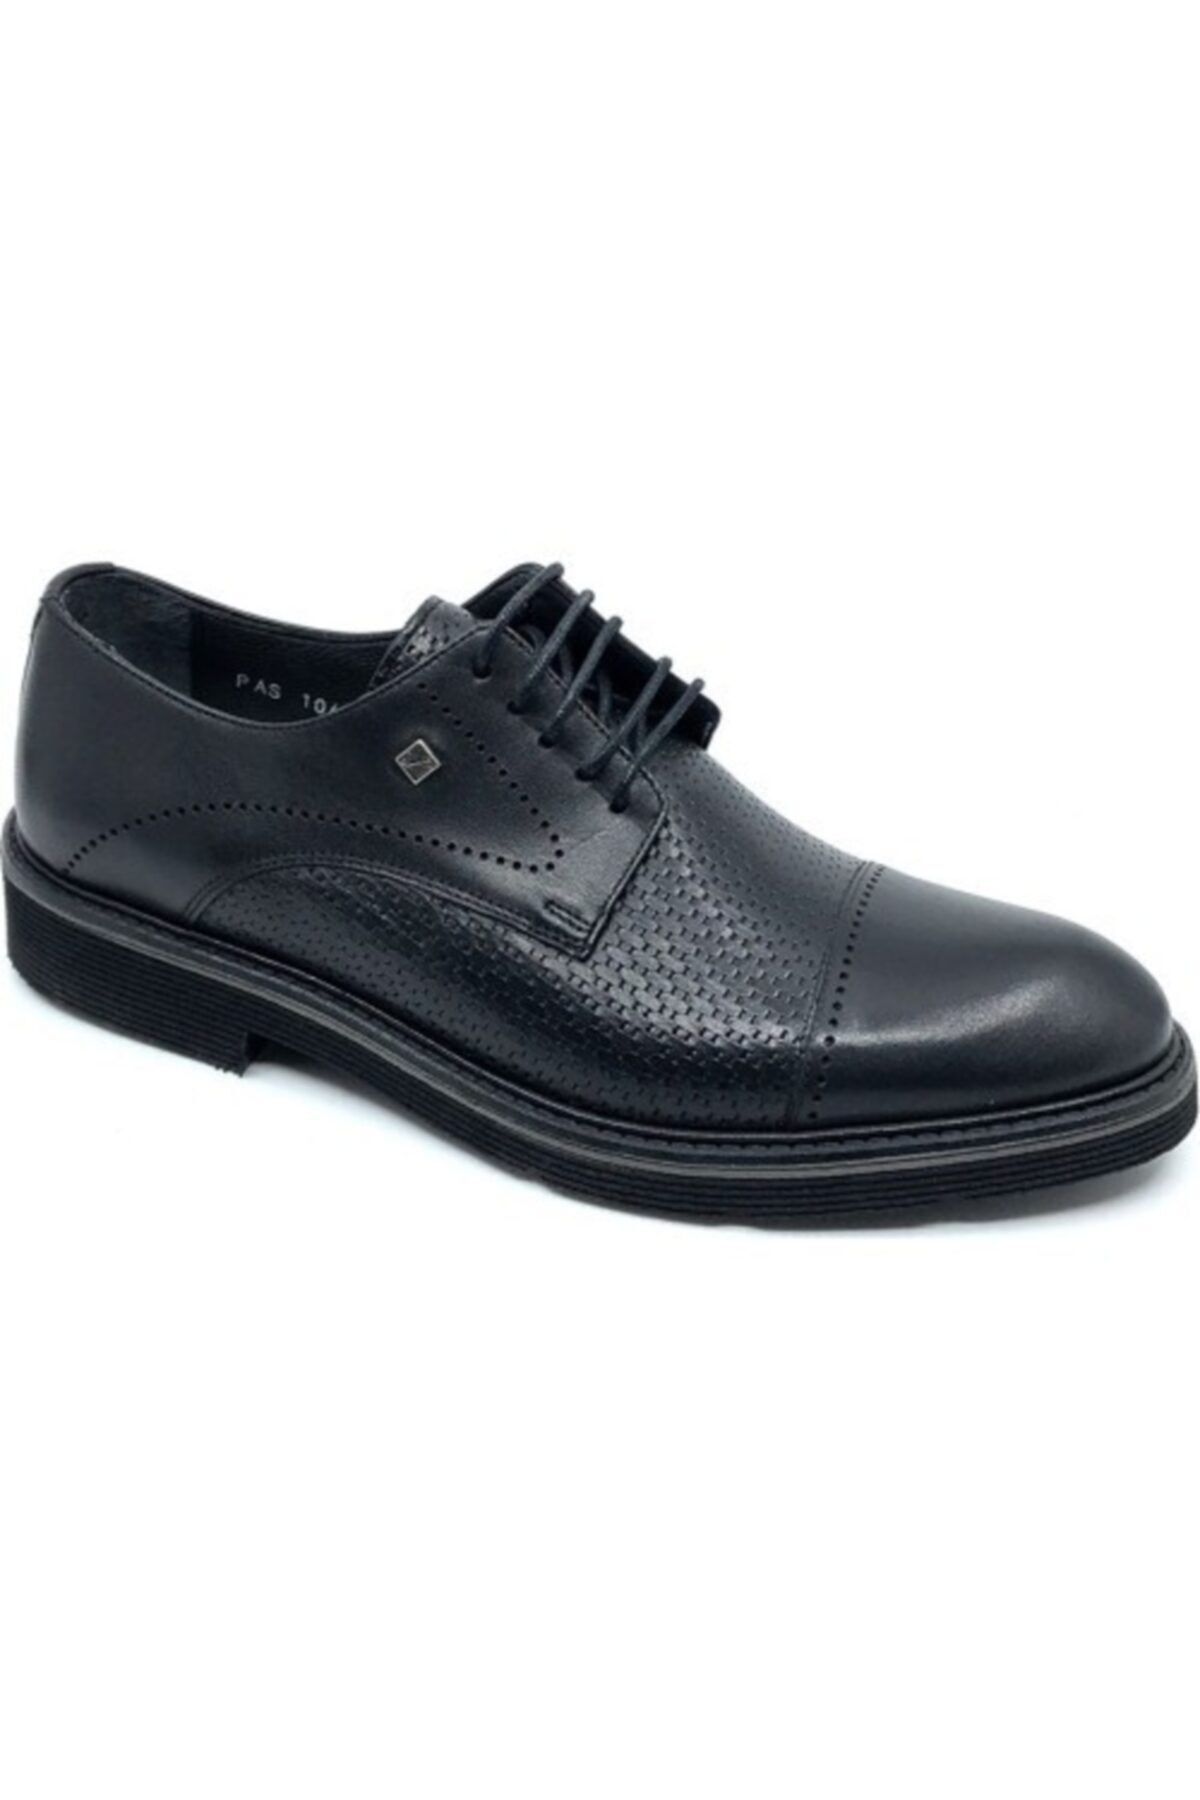 Fosco 1060 Siyah Hakiki Deri Erkek Eva Klasik Casual Günlük Ayakkabı